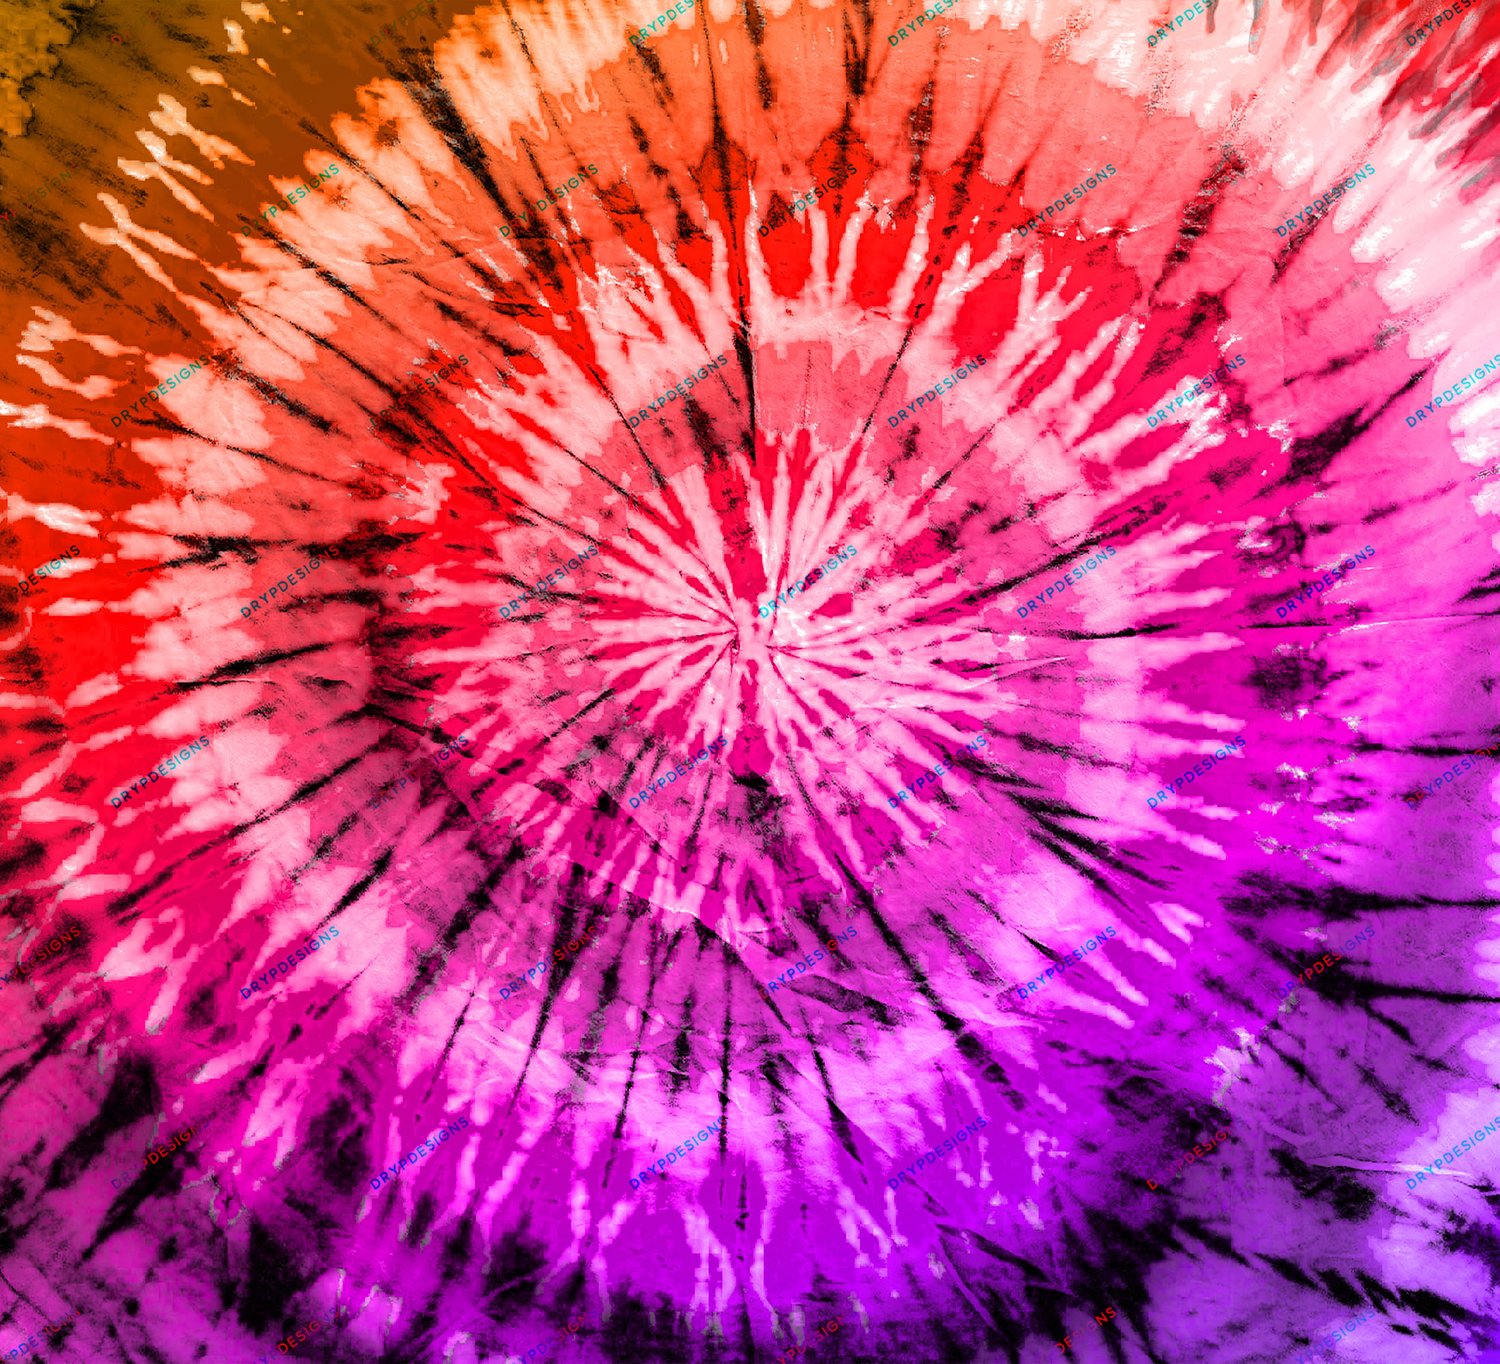 Hãy cùng khám phá nền gradient pha màu hồng cam tím tuyệt đẹp từ Drypdesigns. Sự kết hợp hoàn hảo của các màu sắc sẽ làm cho bức hình của bạn trở nên vô cùng nổi bật và độc đáo. Đừng bỏ lỡ cơ hội để sở hữu một nền phông siêu chất lượng và đẹp mắt như thế này.